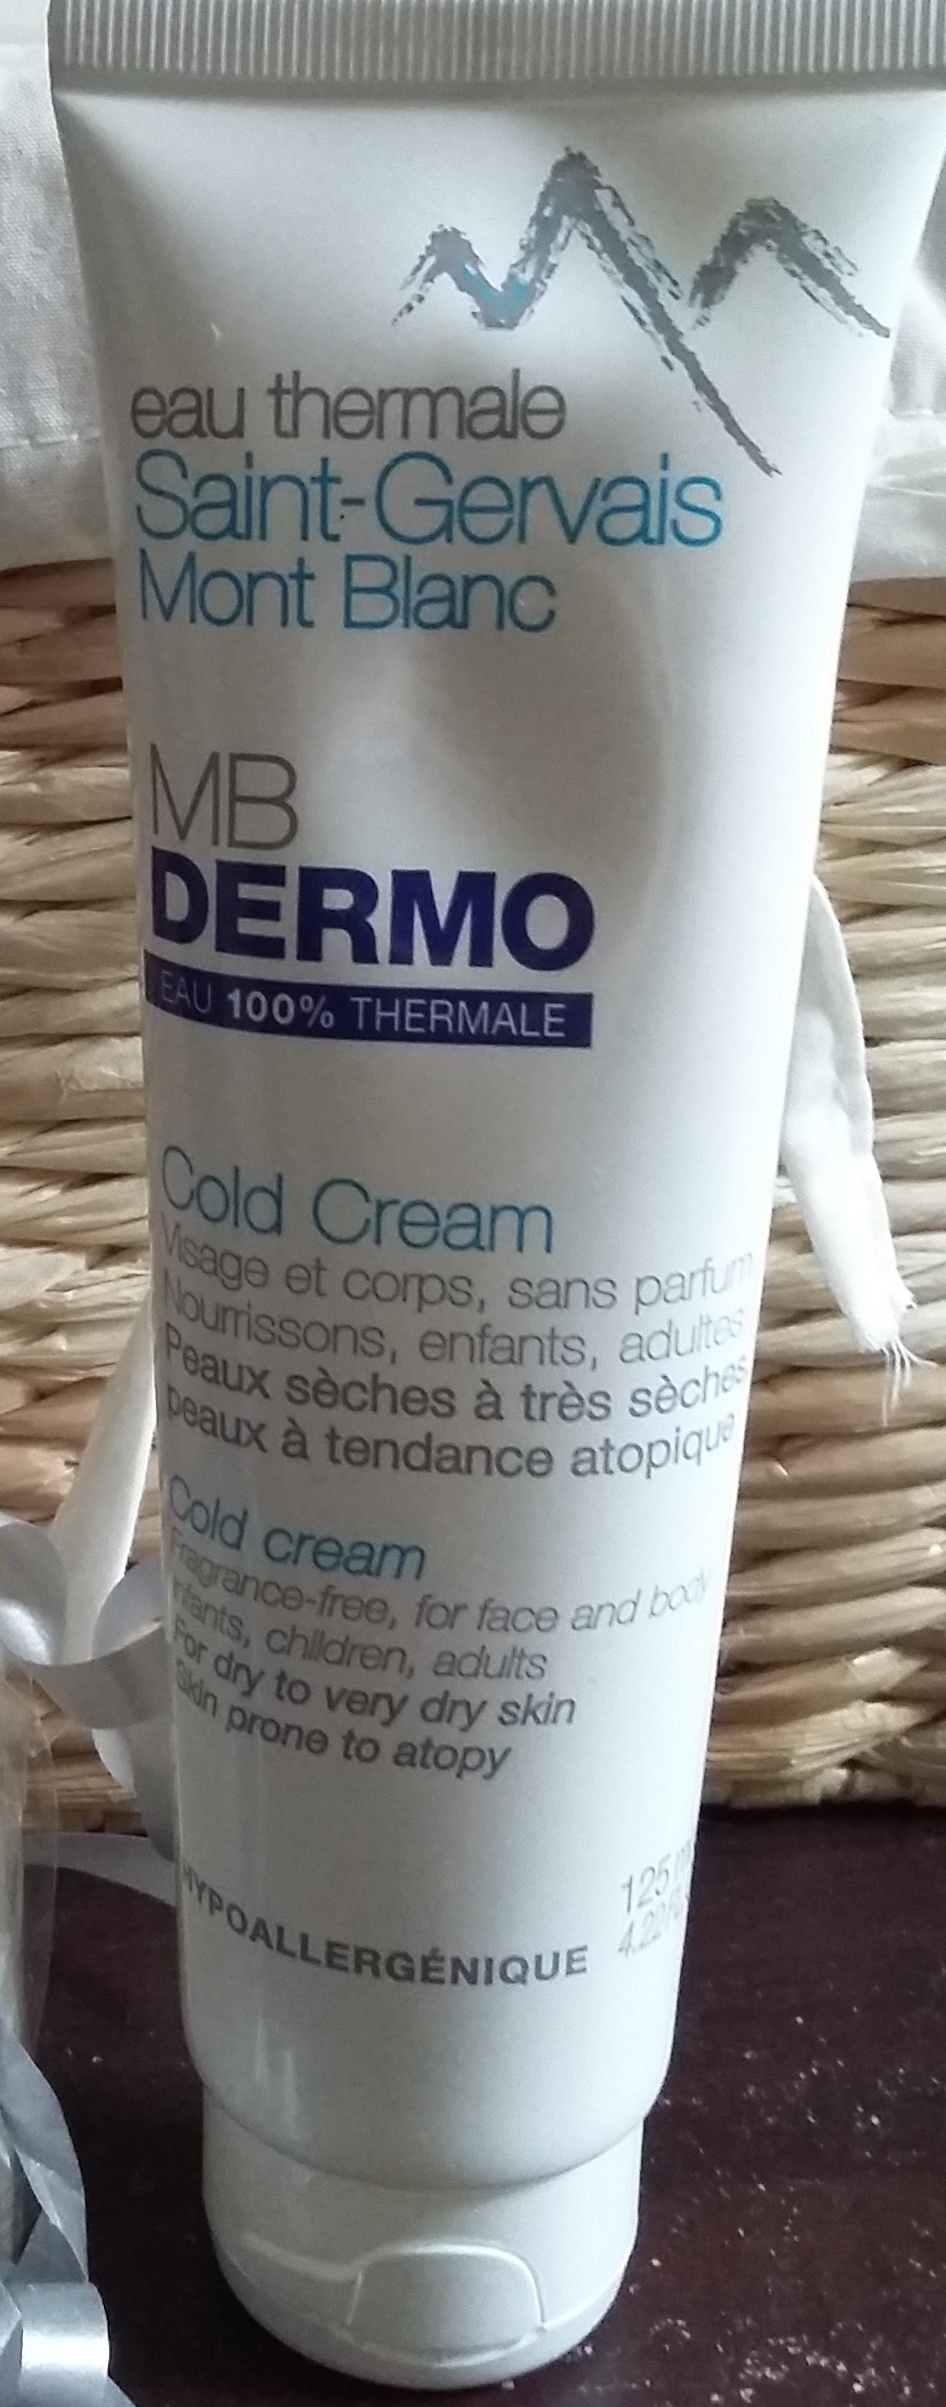 MB dermo cold crème Saint-Gervais Mont Blanc - Produit - fr